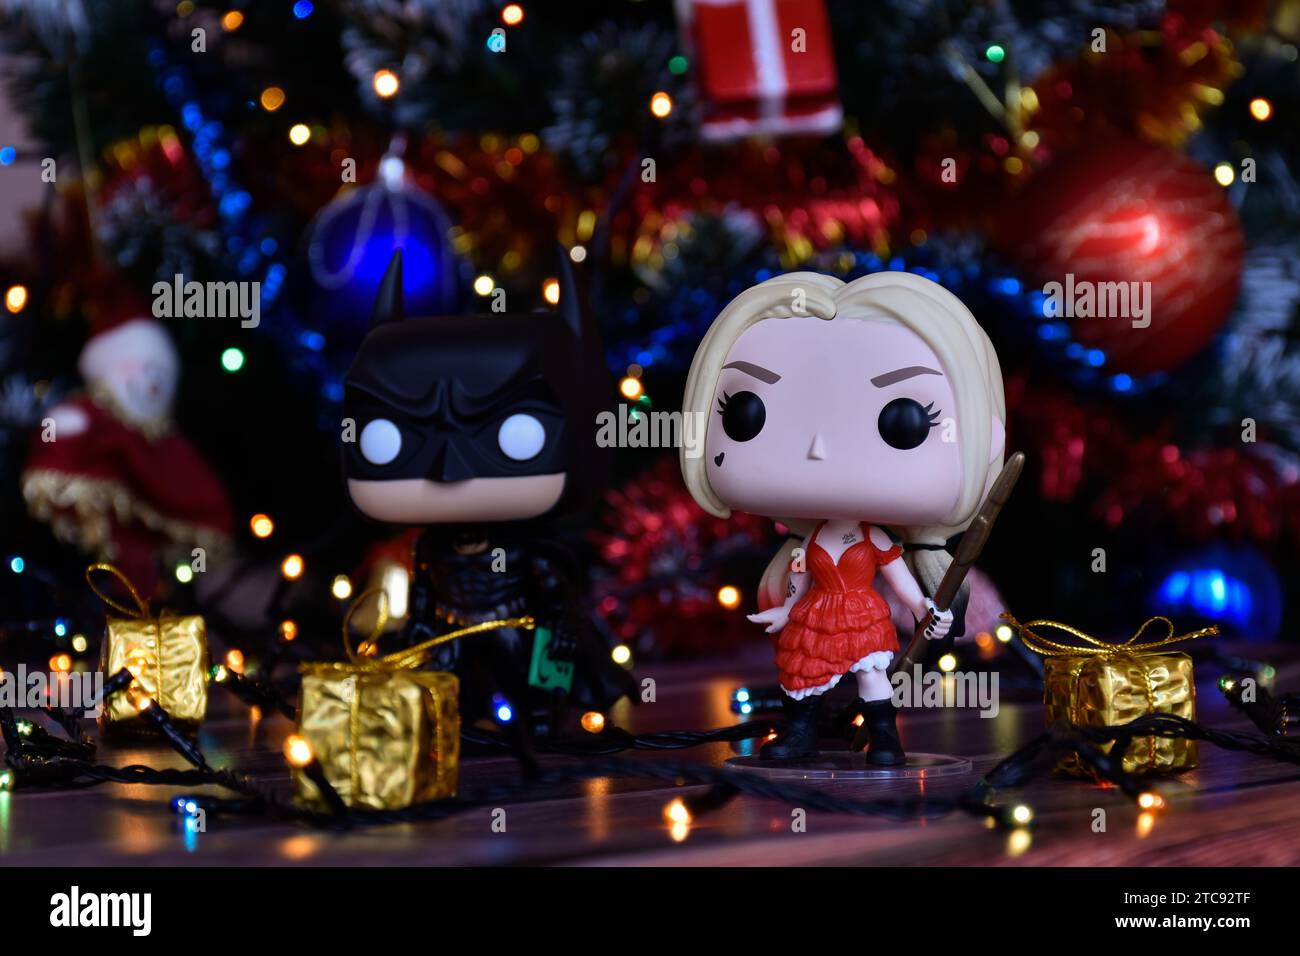 Funko Pop action figure dei supereroi dei fumetti DC Batman e Harley Quinn. Albero di Natale, ornamenti, ghirlanda, confezioni regalo, luci colorate. Foto Stock